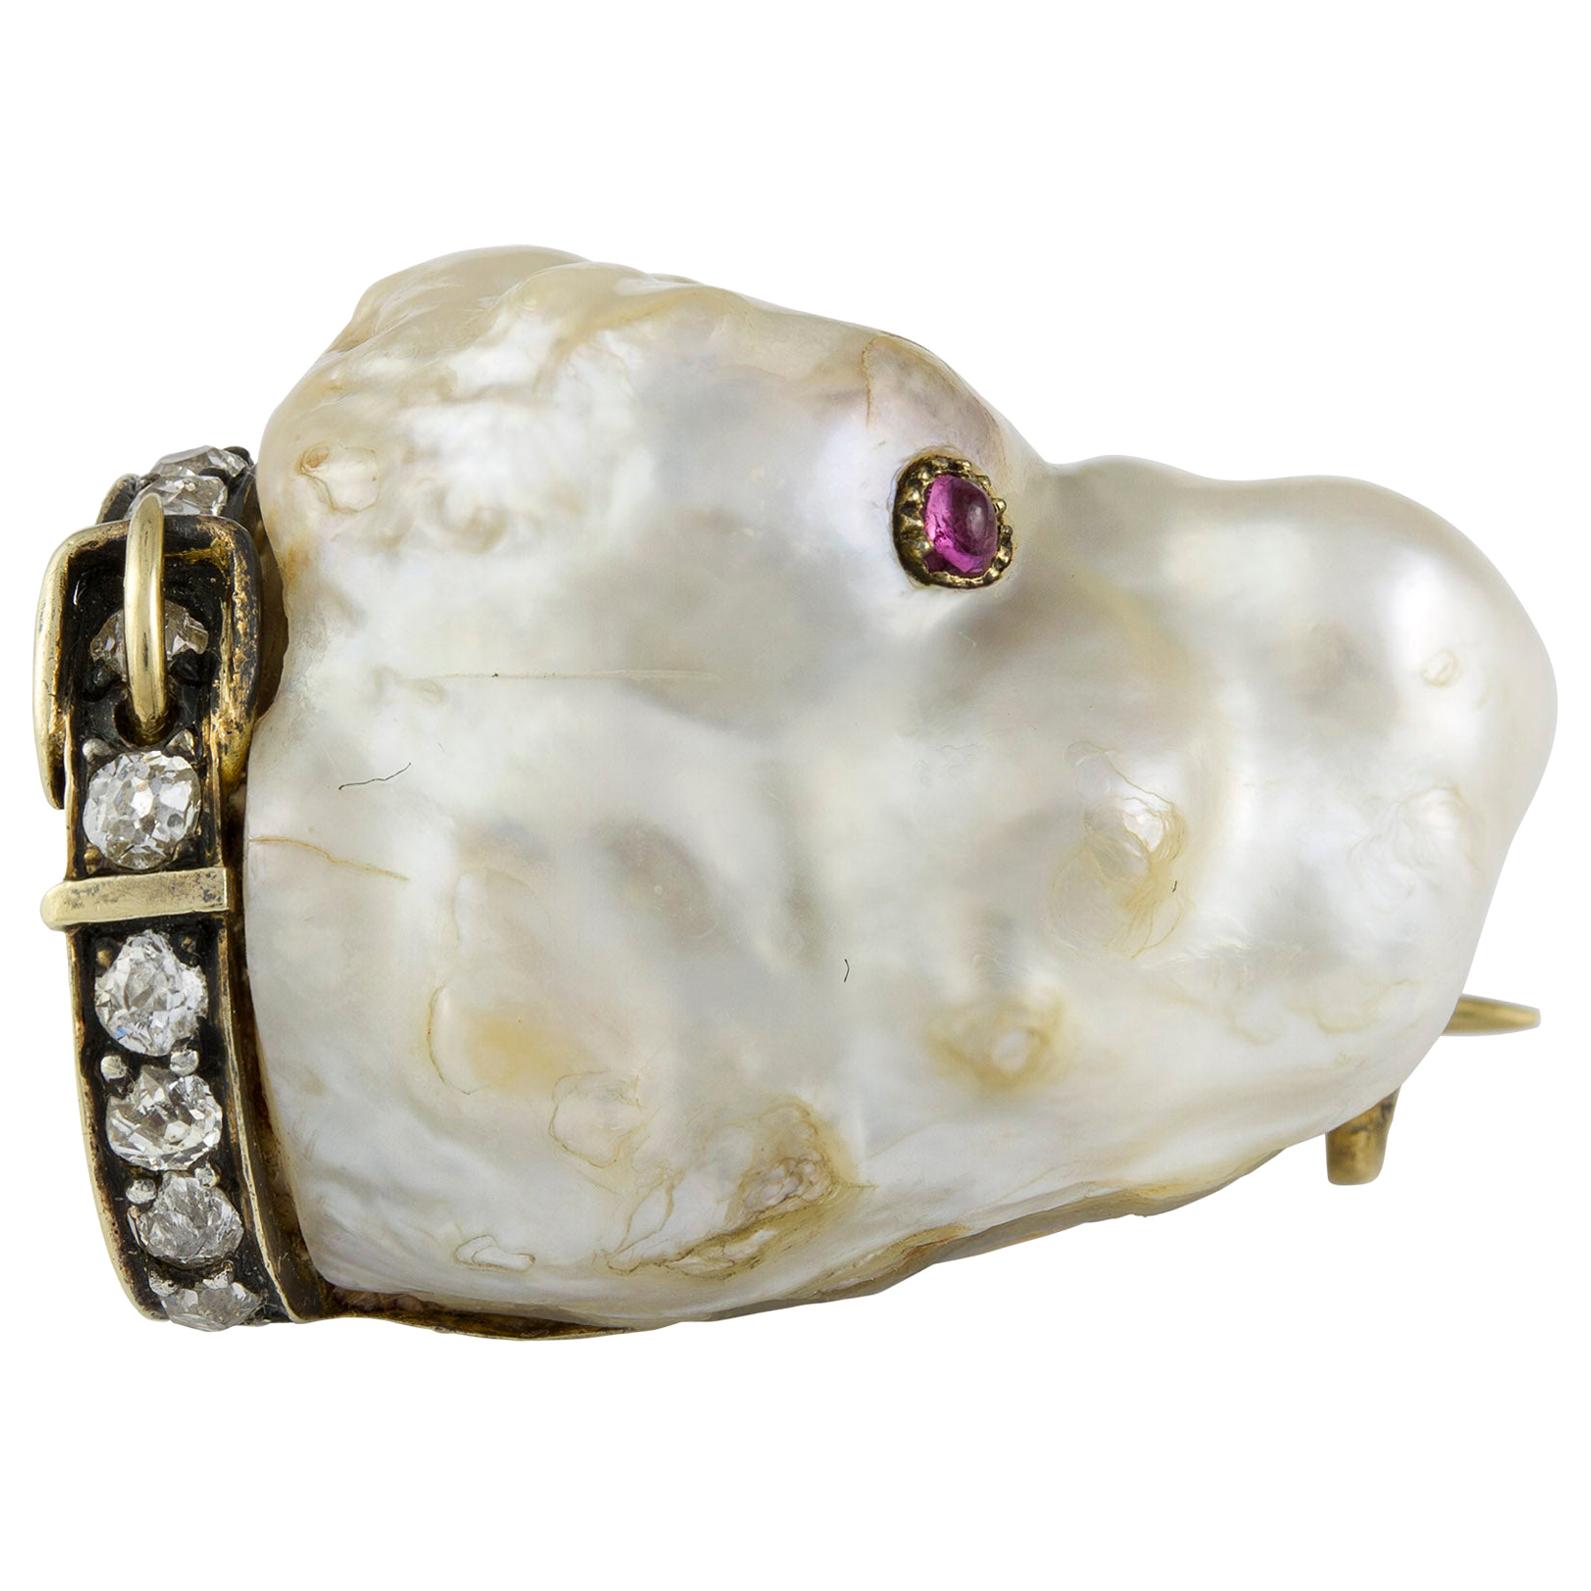 Spätviktorianische Hundebrosche mit Perlen, Edelsteinen und Diamanten